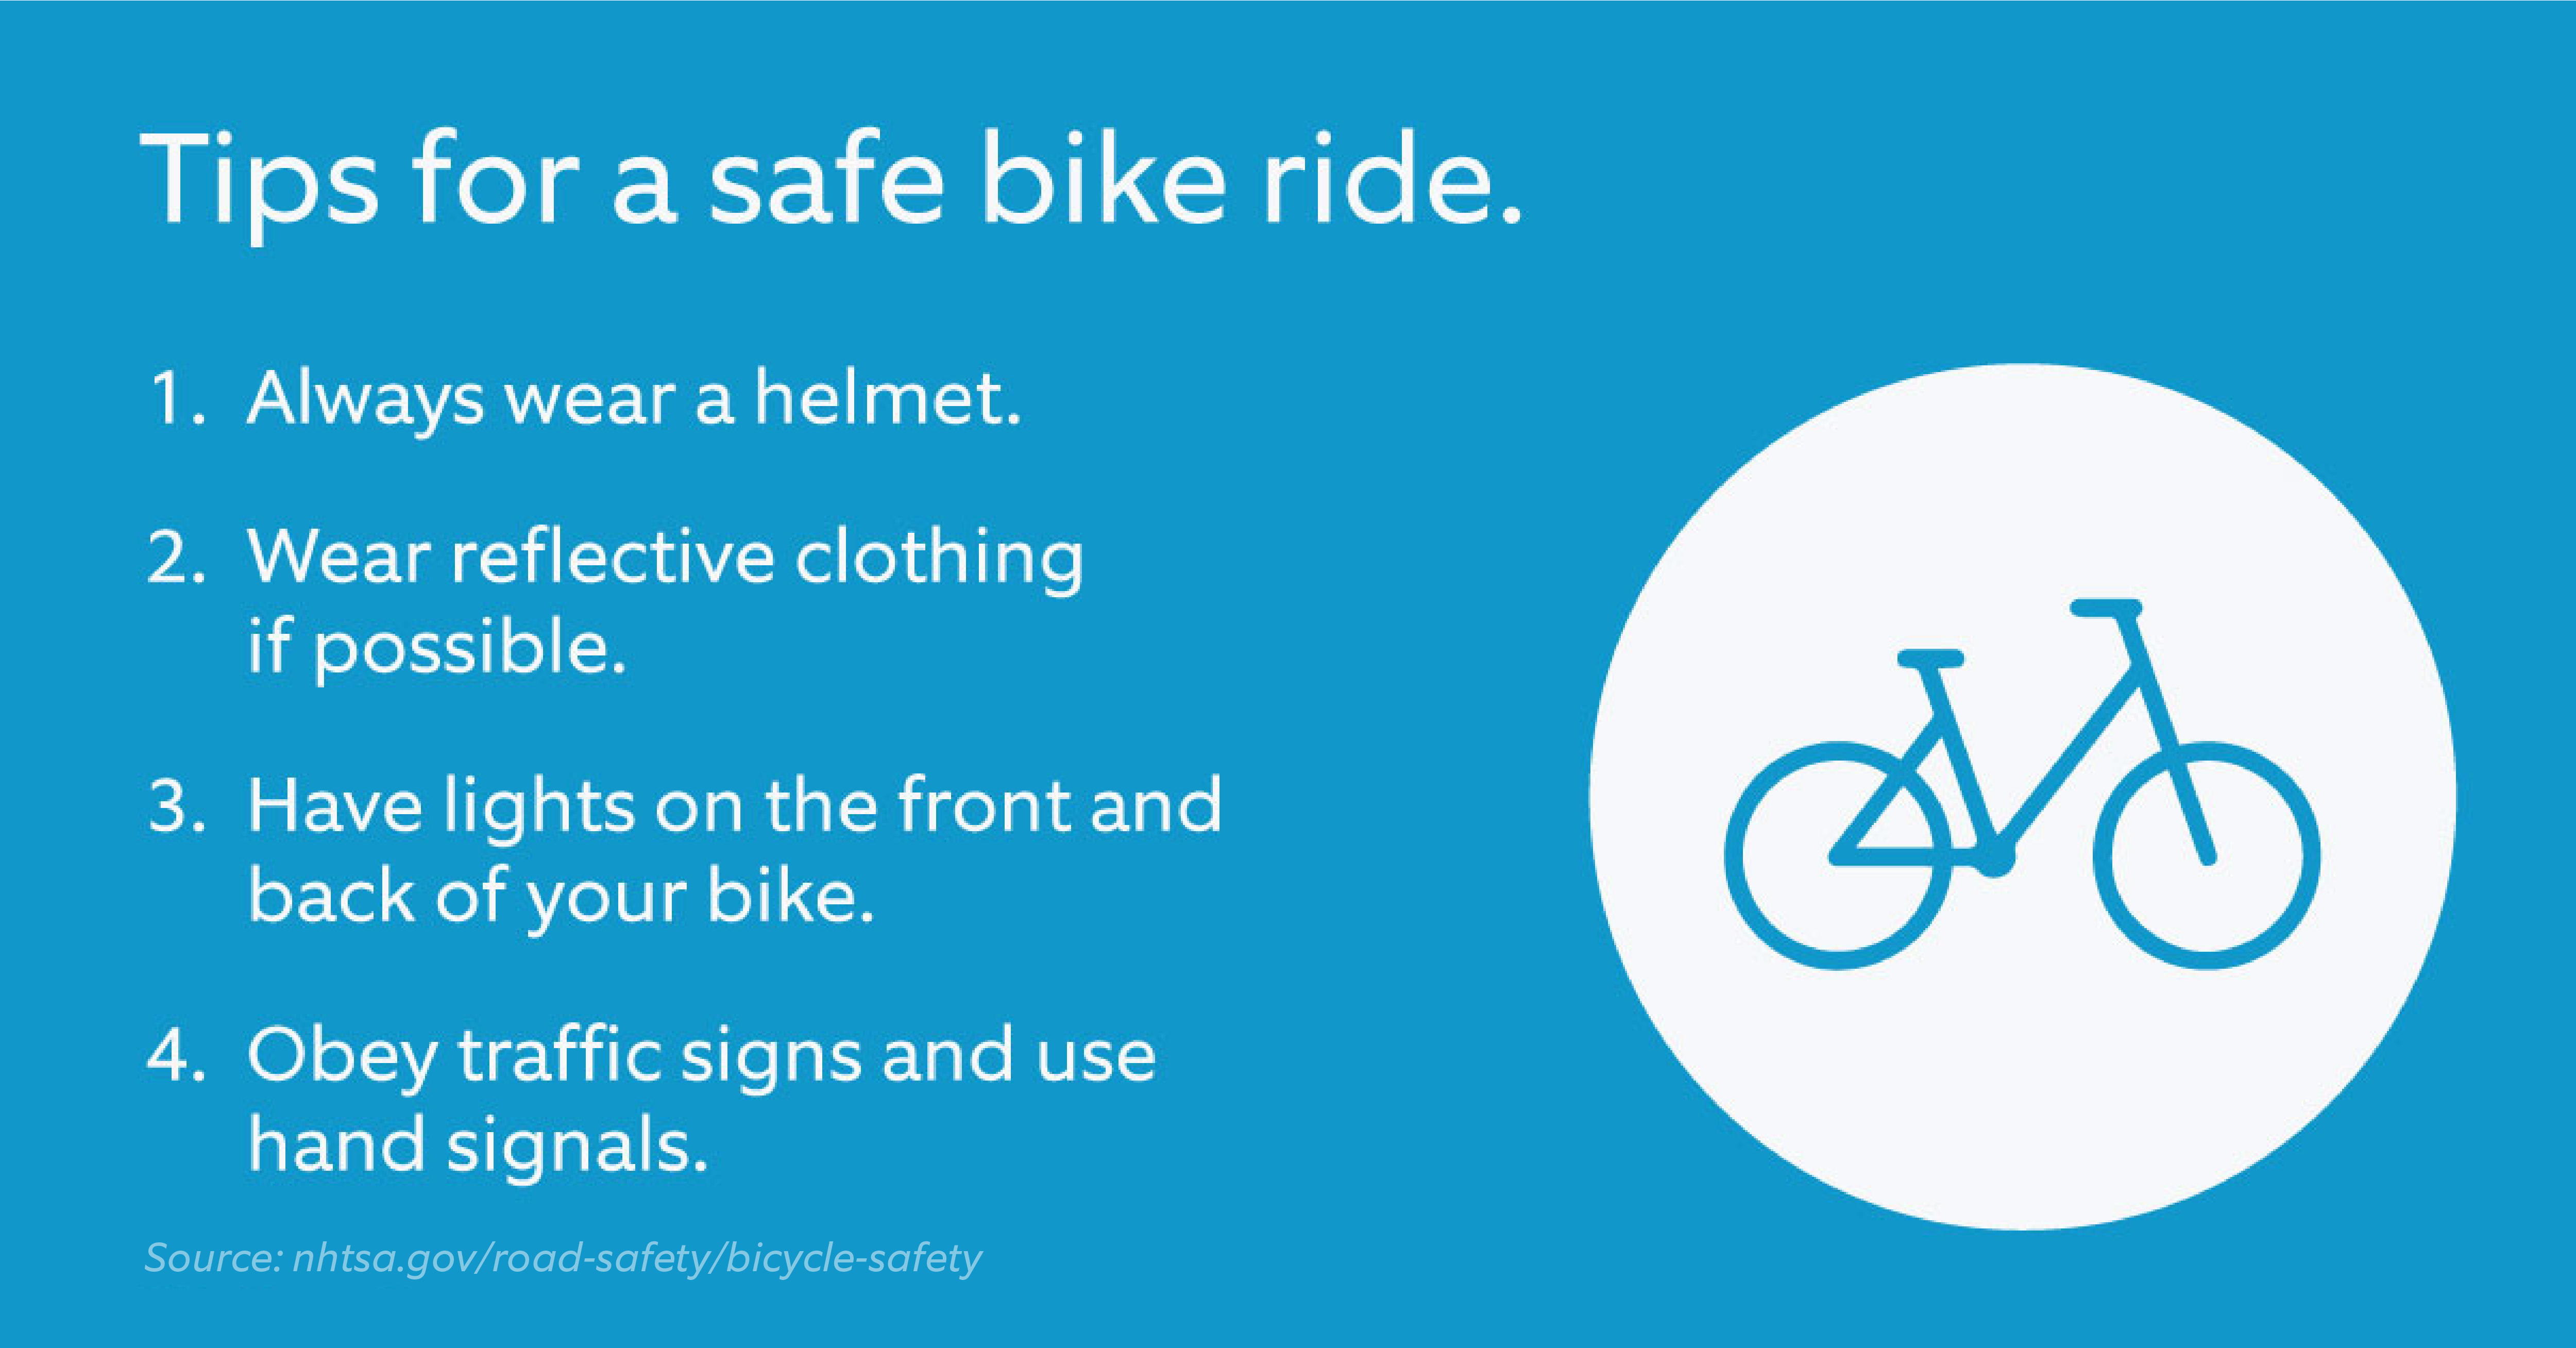 Tips_for_safe_bike_ride-01.png